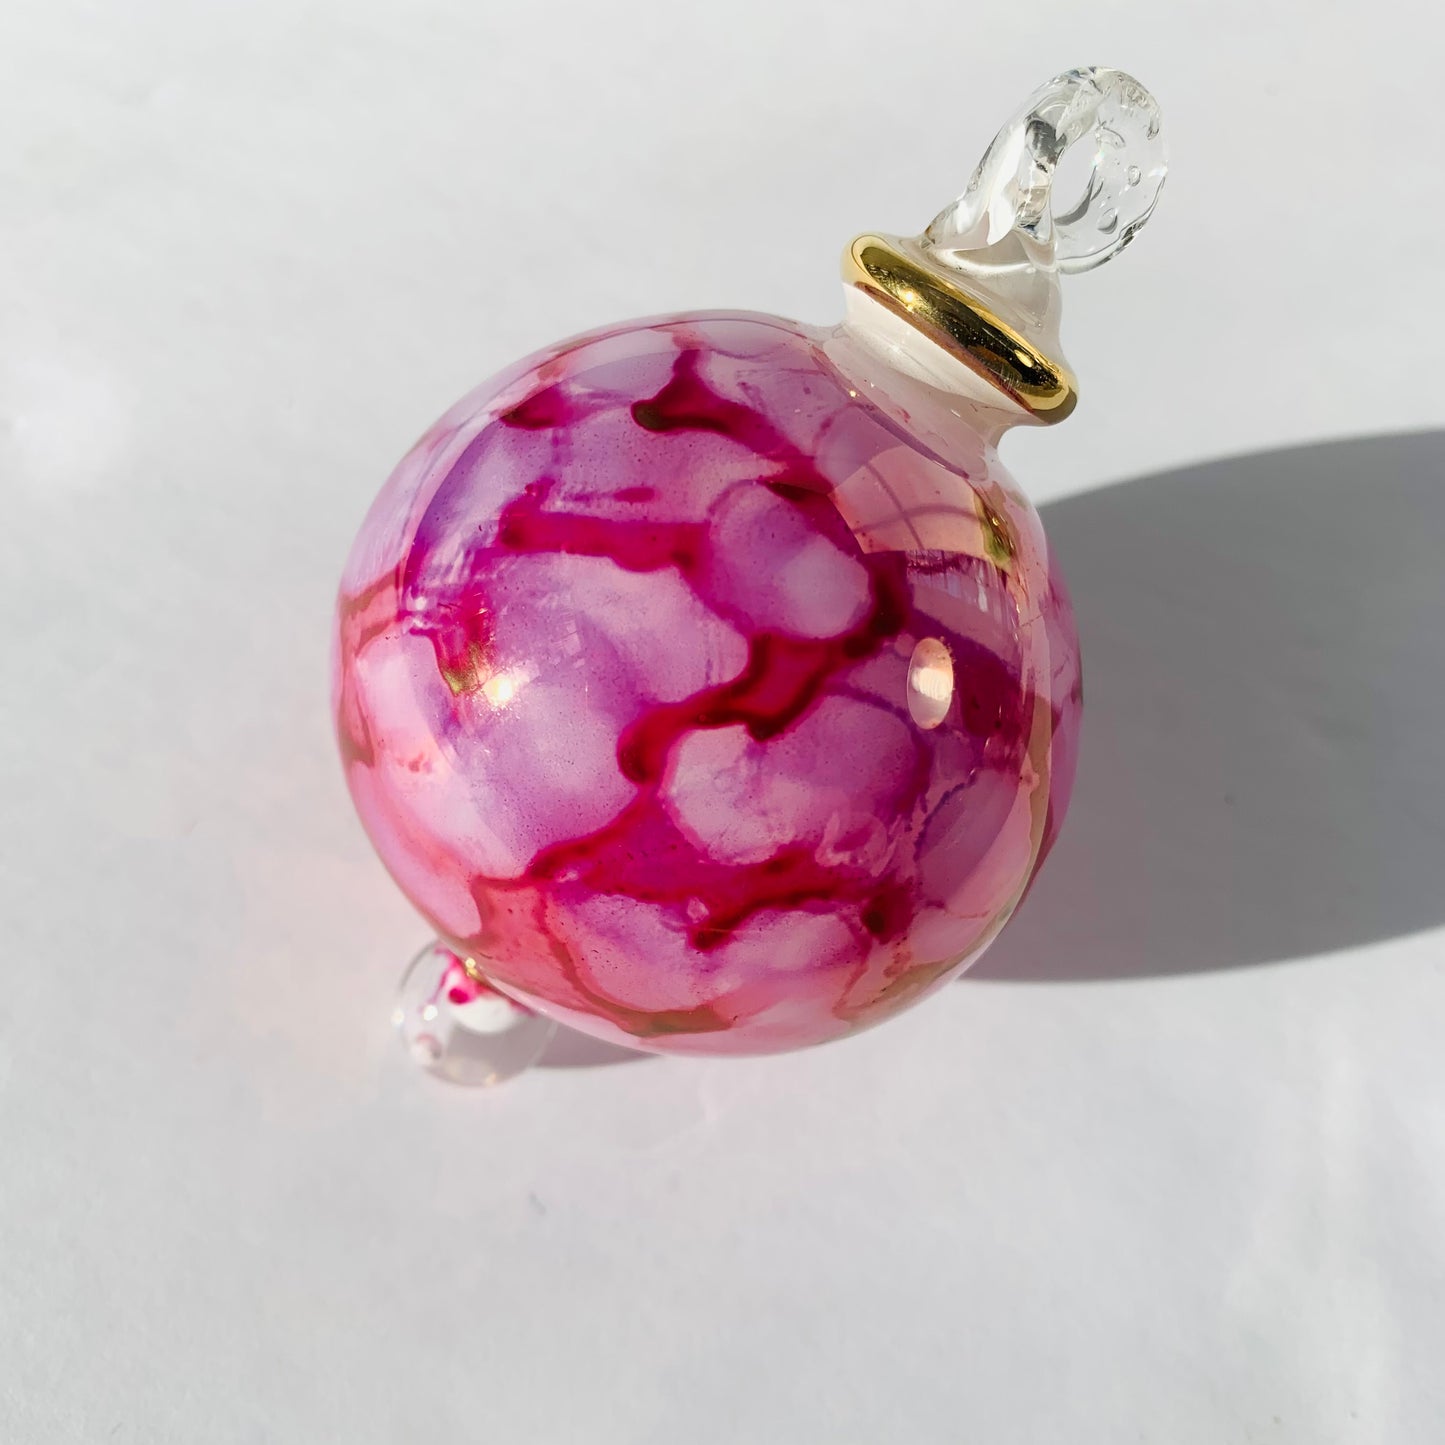 Blown Glass Small Ornament - Splash